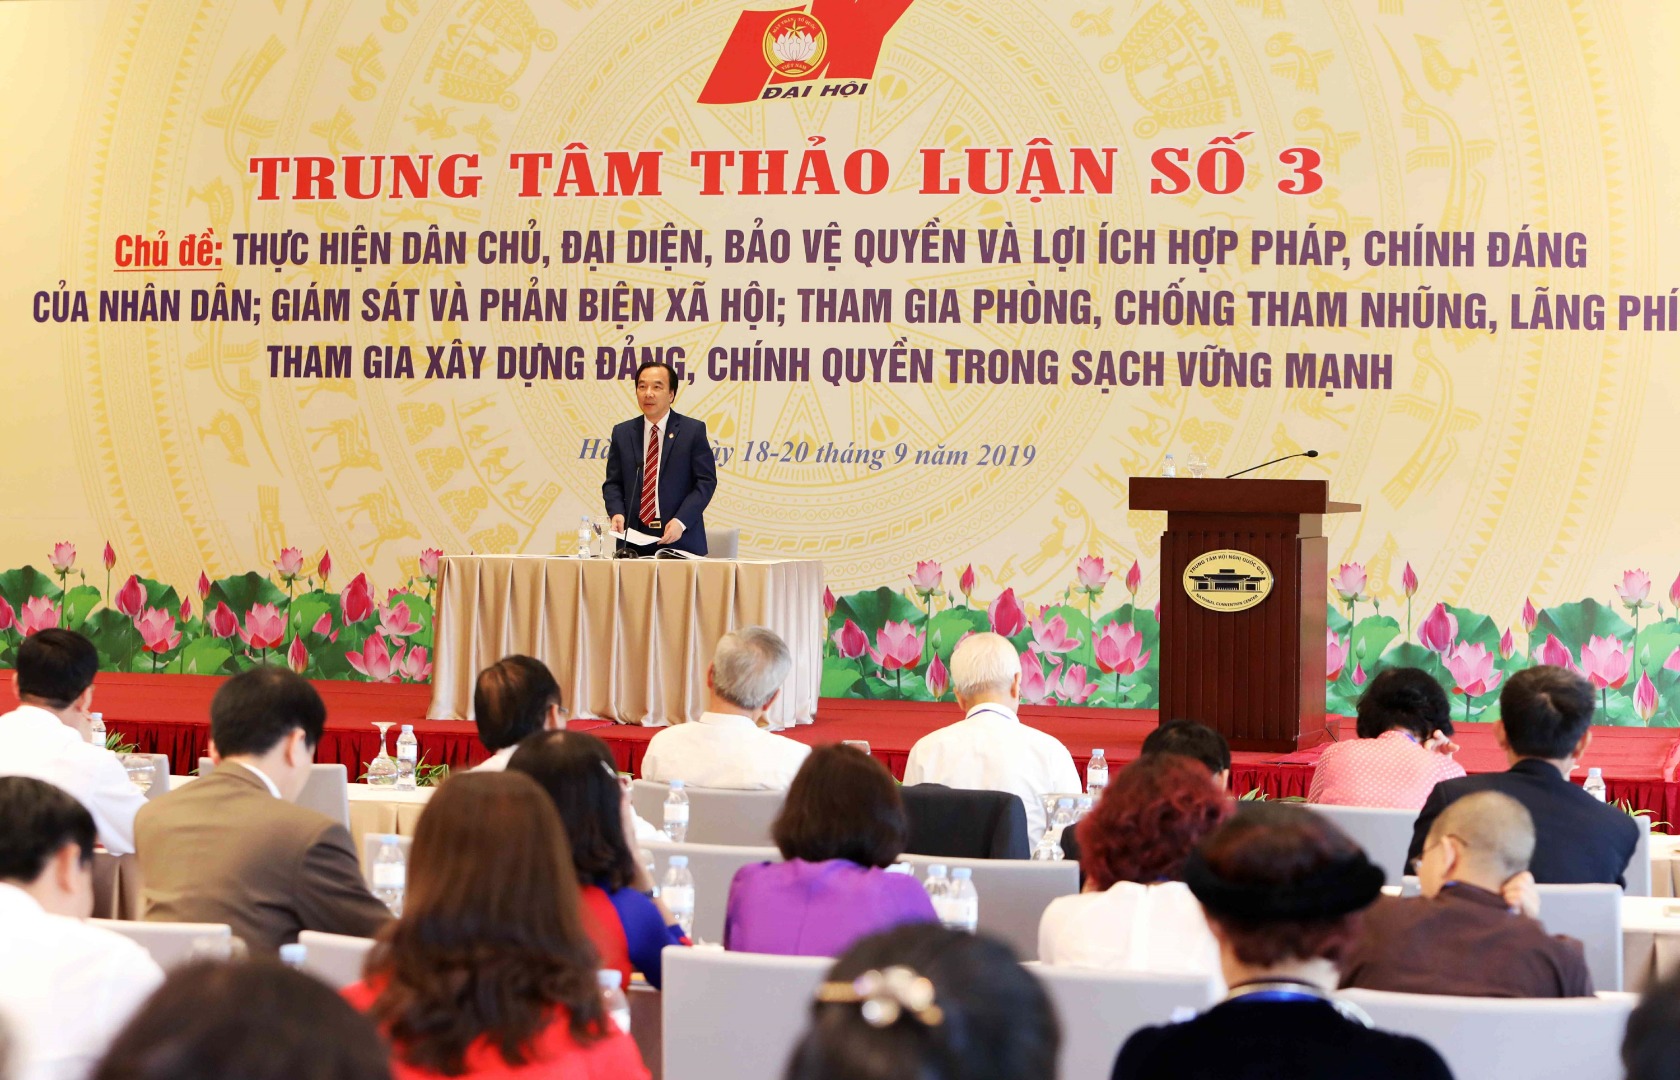 Phản biện xã hội ở Việt Nam hiện nay - Thực trạng và giải pháp